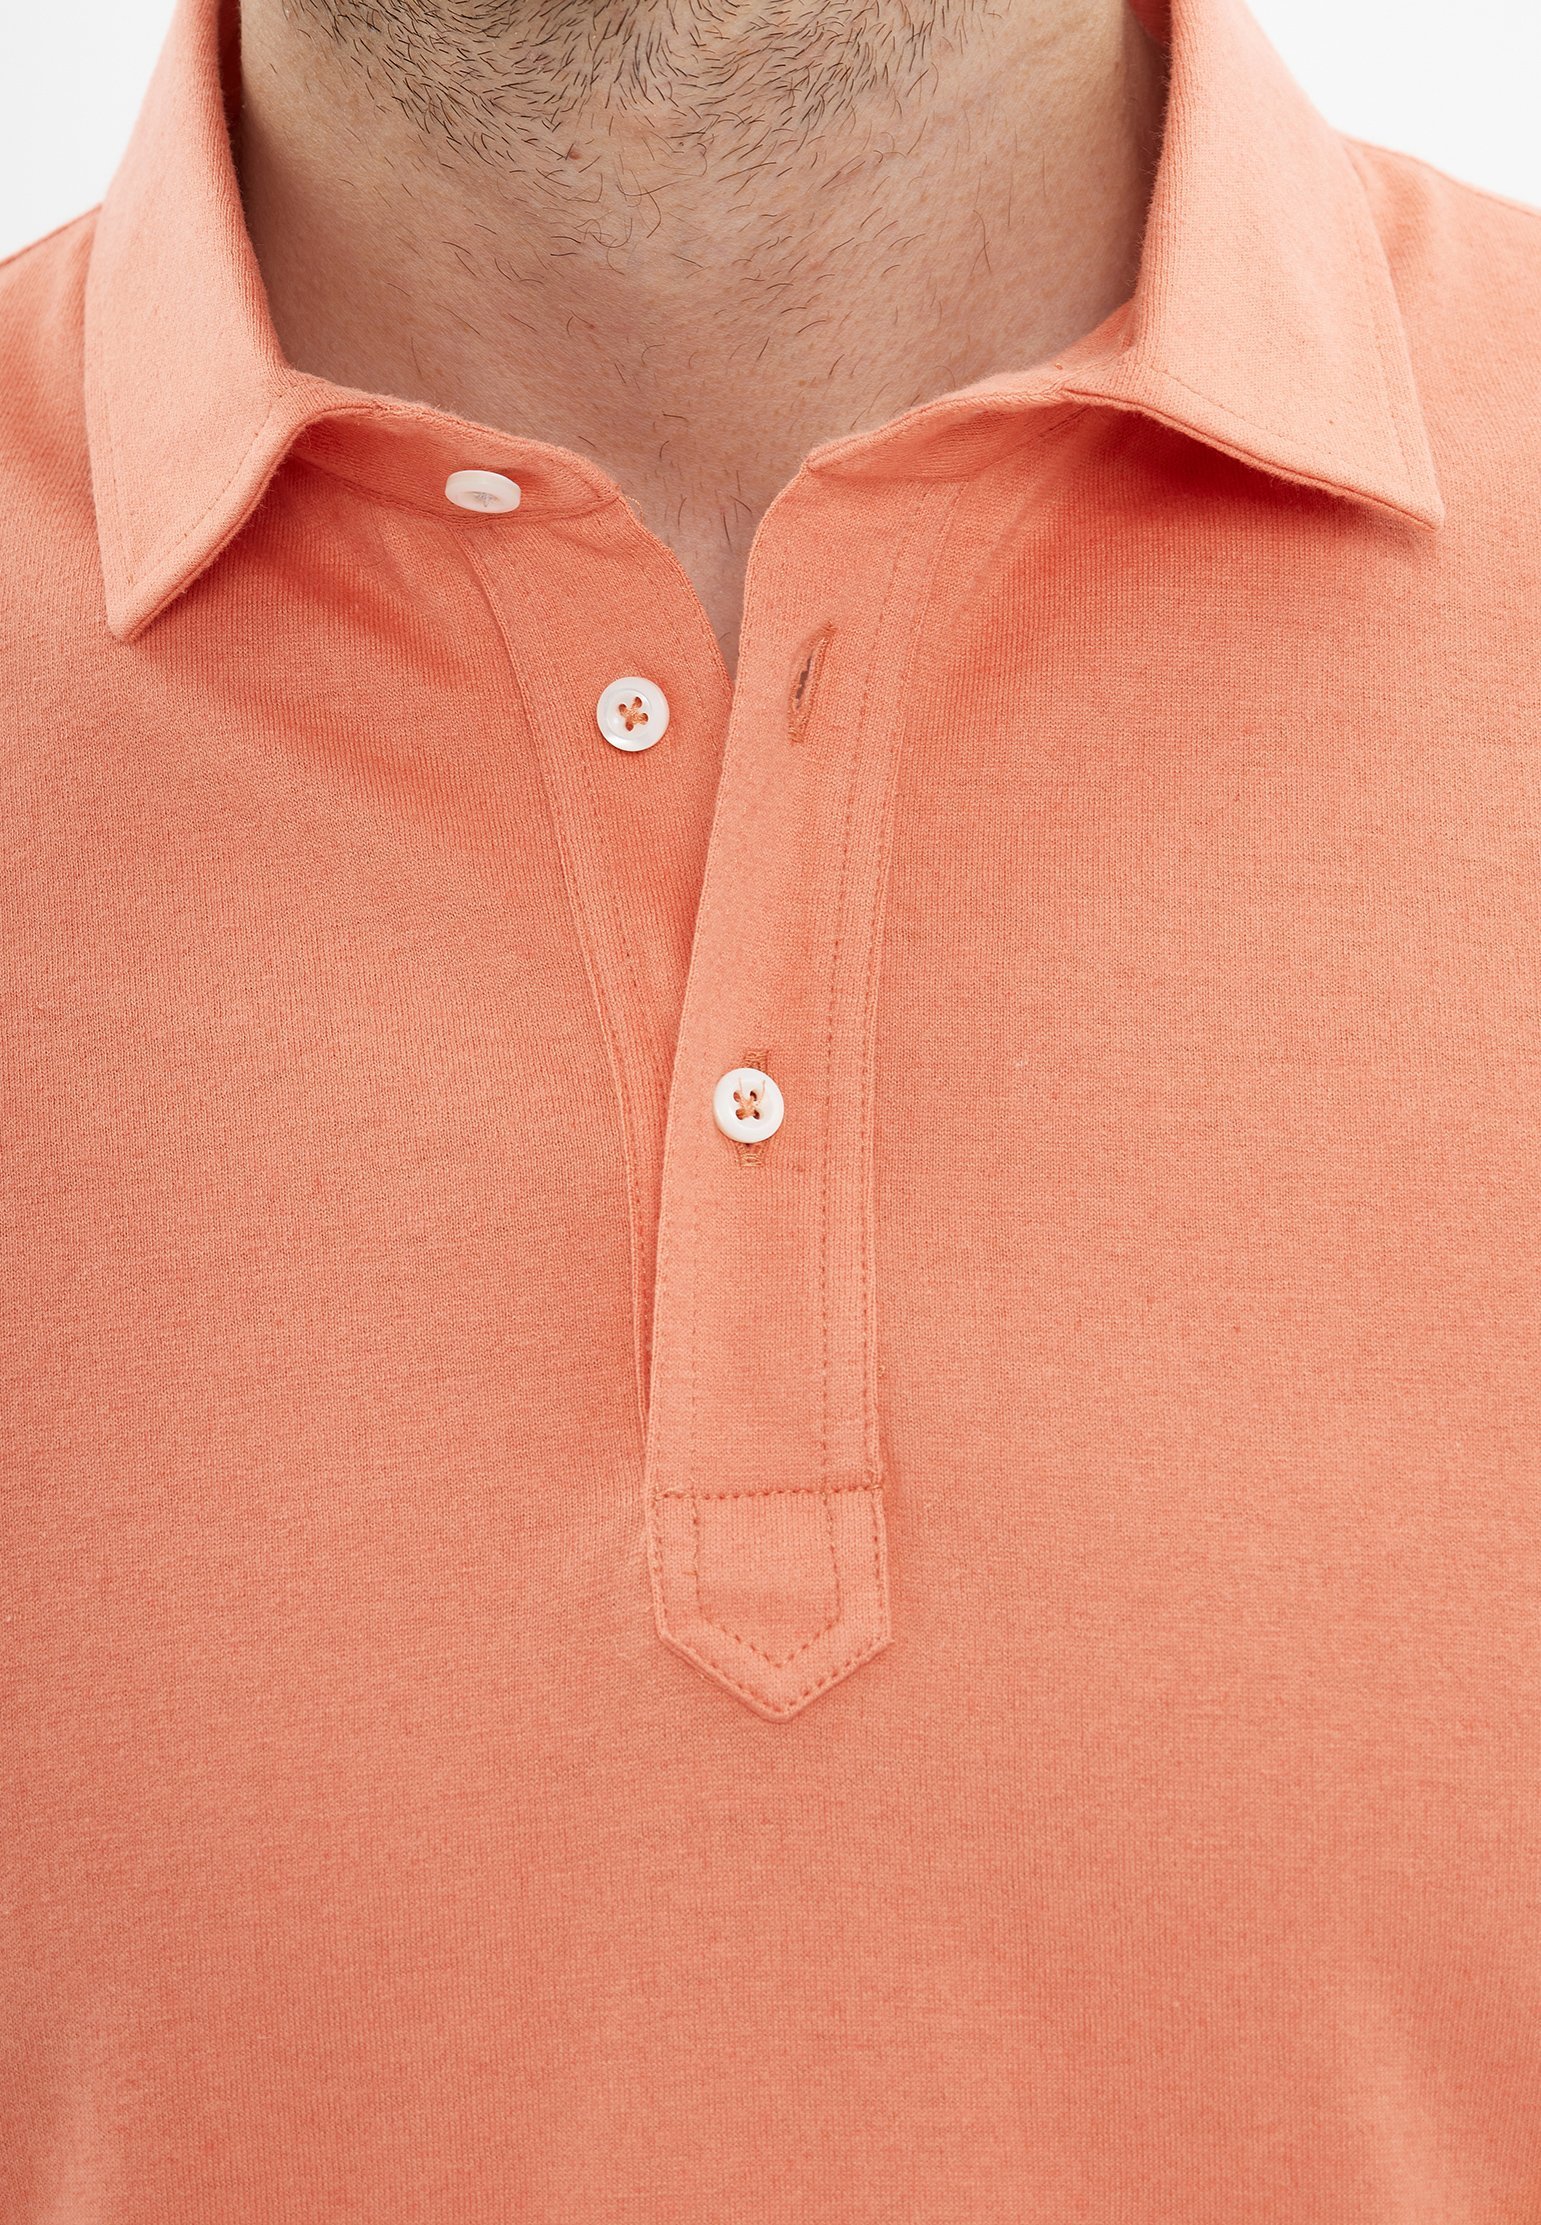 Polo BRUNELLO CUCINELLI Color: orange (Code: 1496) in online store Allure